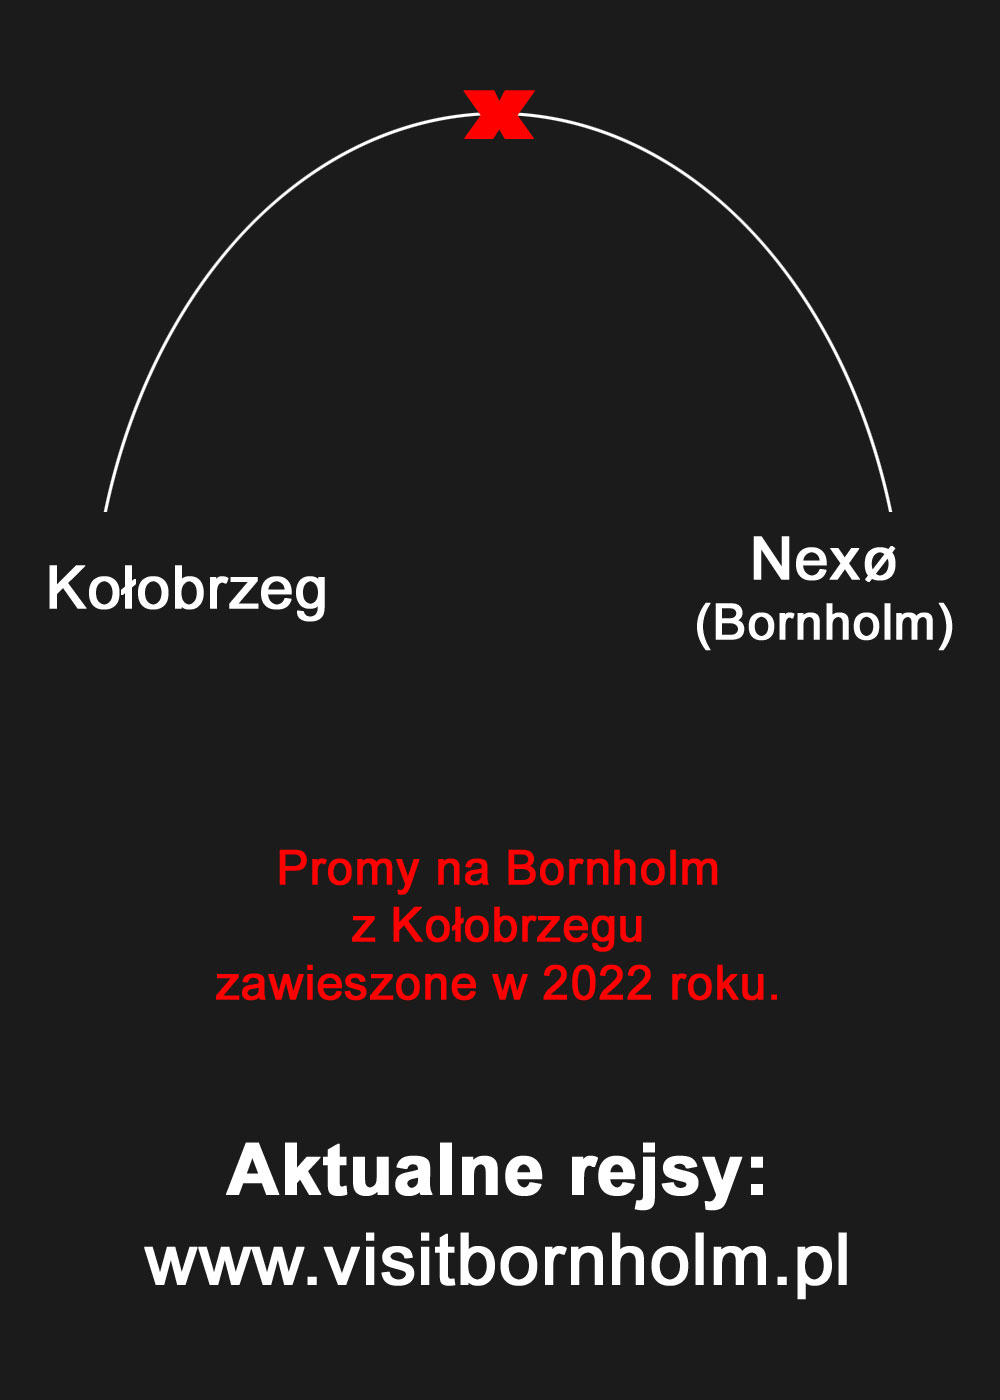 Kołobrzeg-Nexo - prom odwołany w 2022 roku